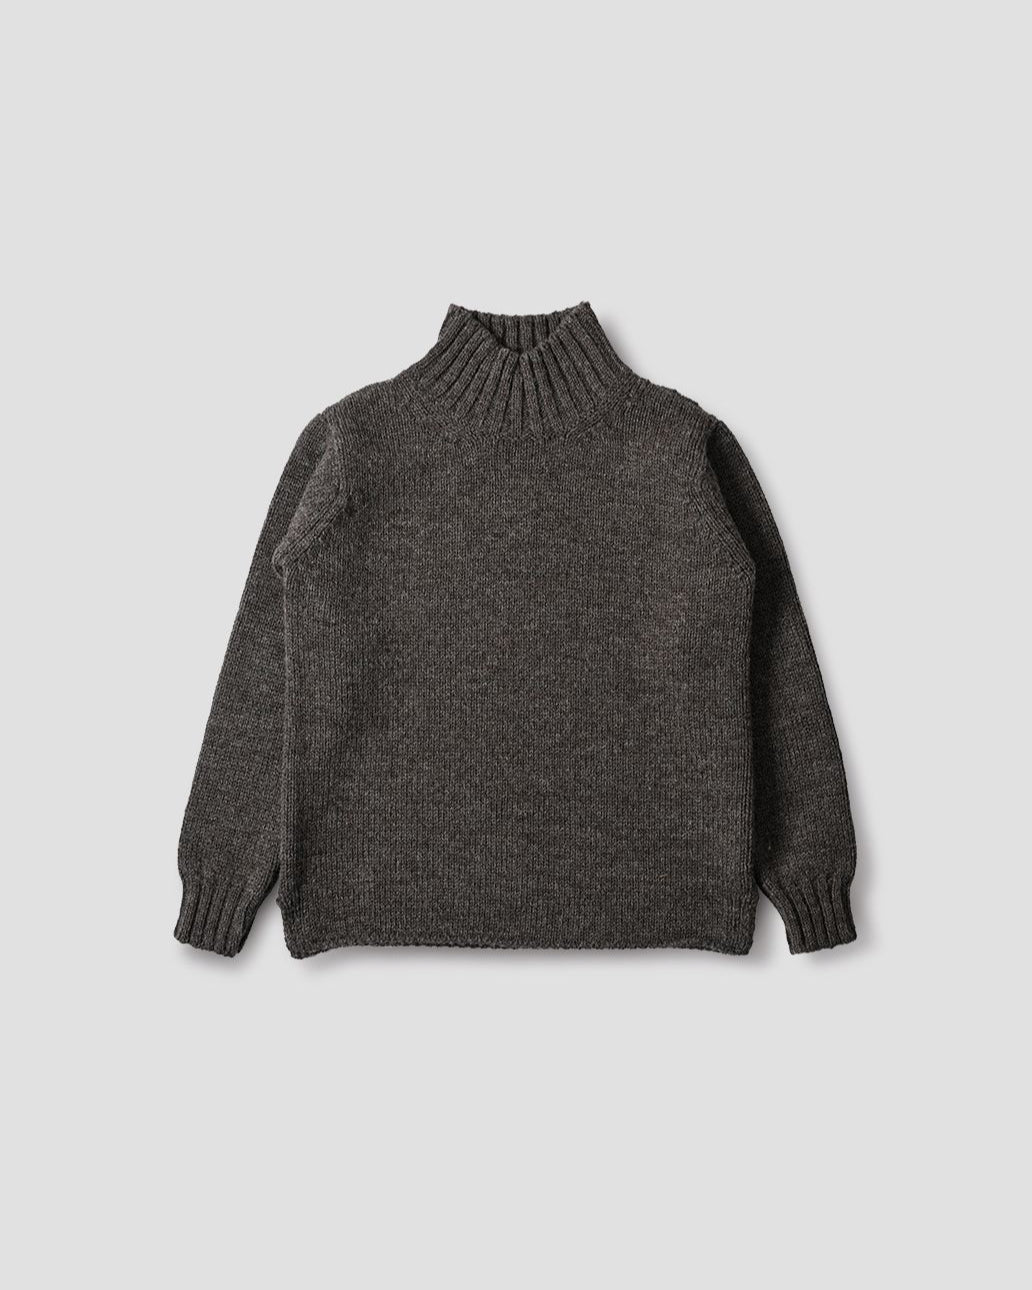 Wide Neck Sweater British Wool - Dark Natural